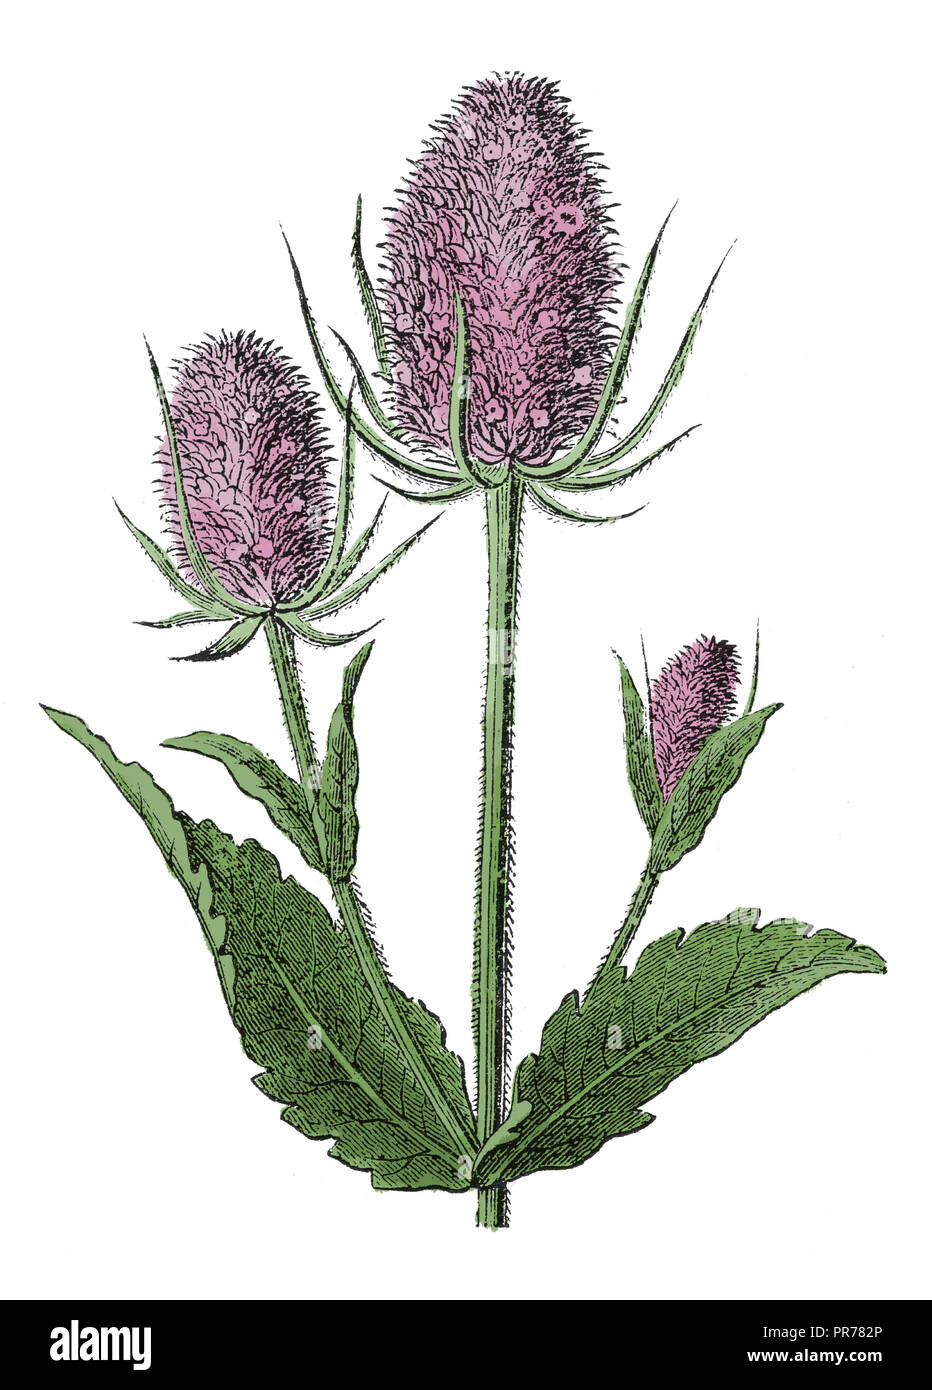 19ème siècle illustration de Dipsacus fullonum, syn. Dipsacus sylvestris, est une espèce de plante connue par les noms communs d'une cardère à foulon Banque D'Images